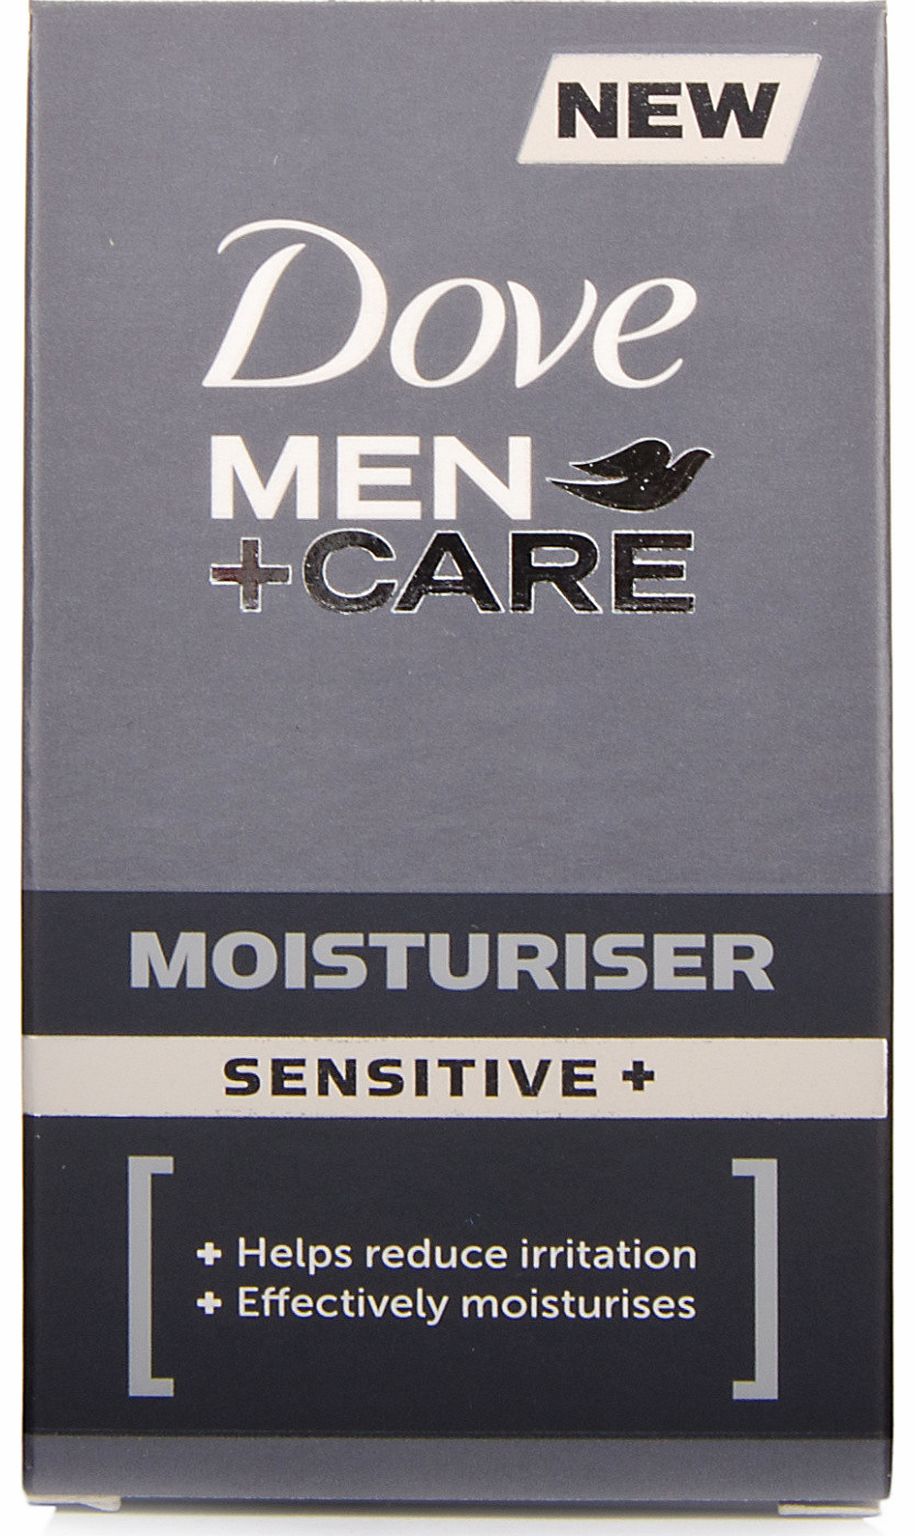 Men+Care Moisturiser Sensitive+